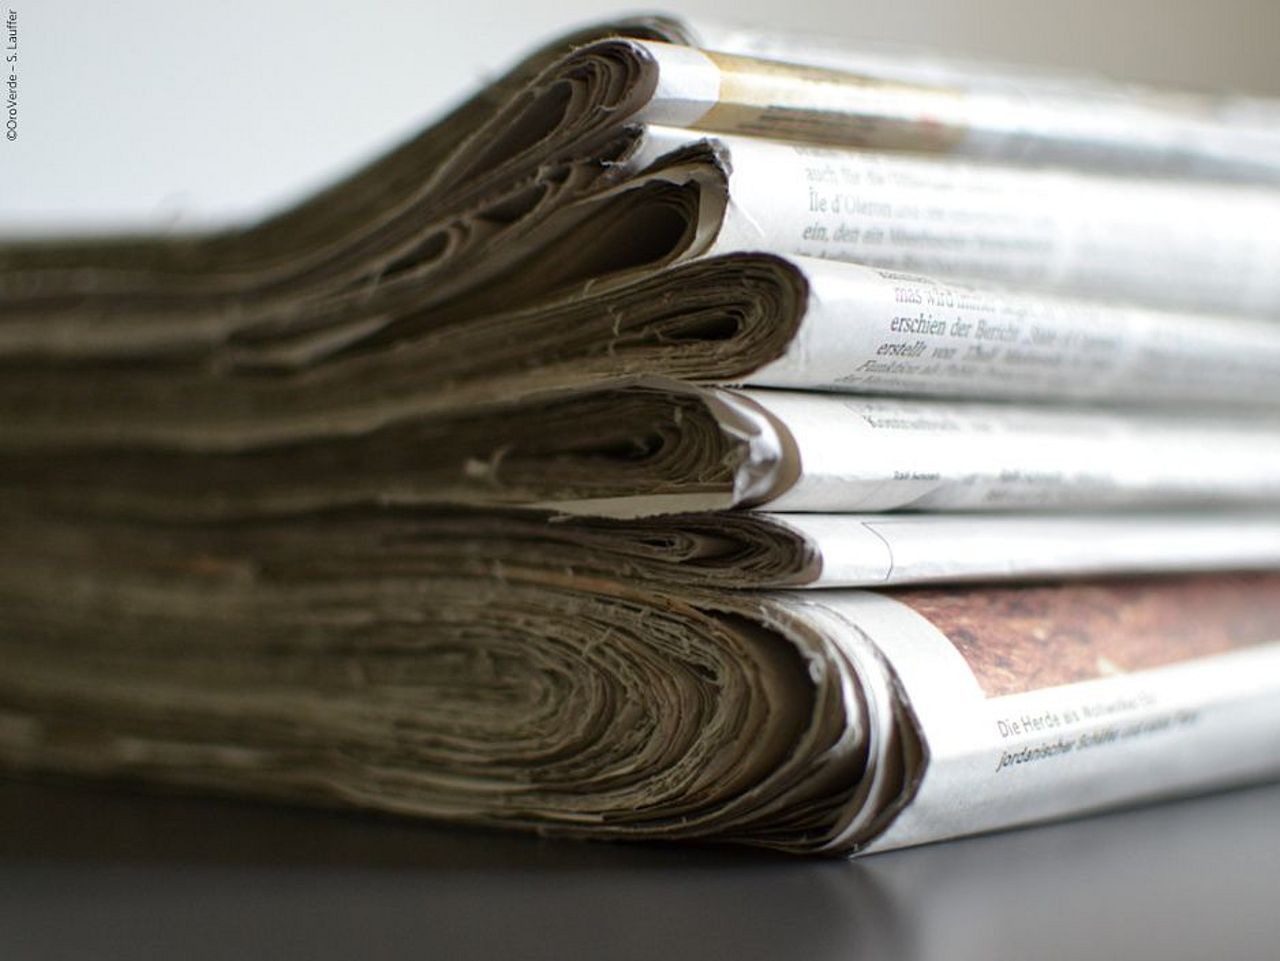 Papier sparen indem Sie Ihre Zeitung mit anderen teilen. ©OroVerde - S.Lauffer